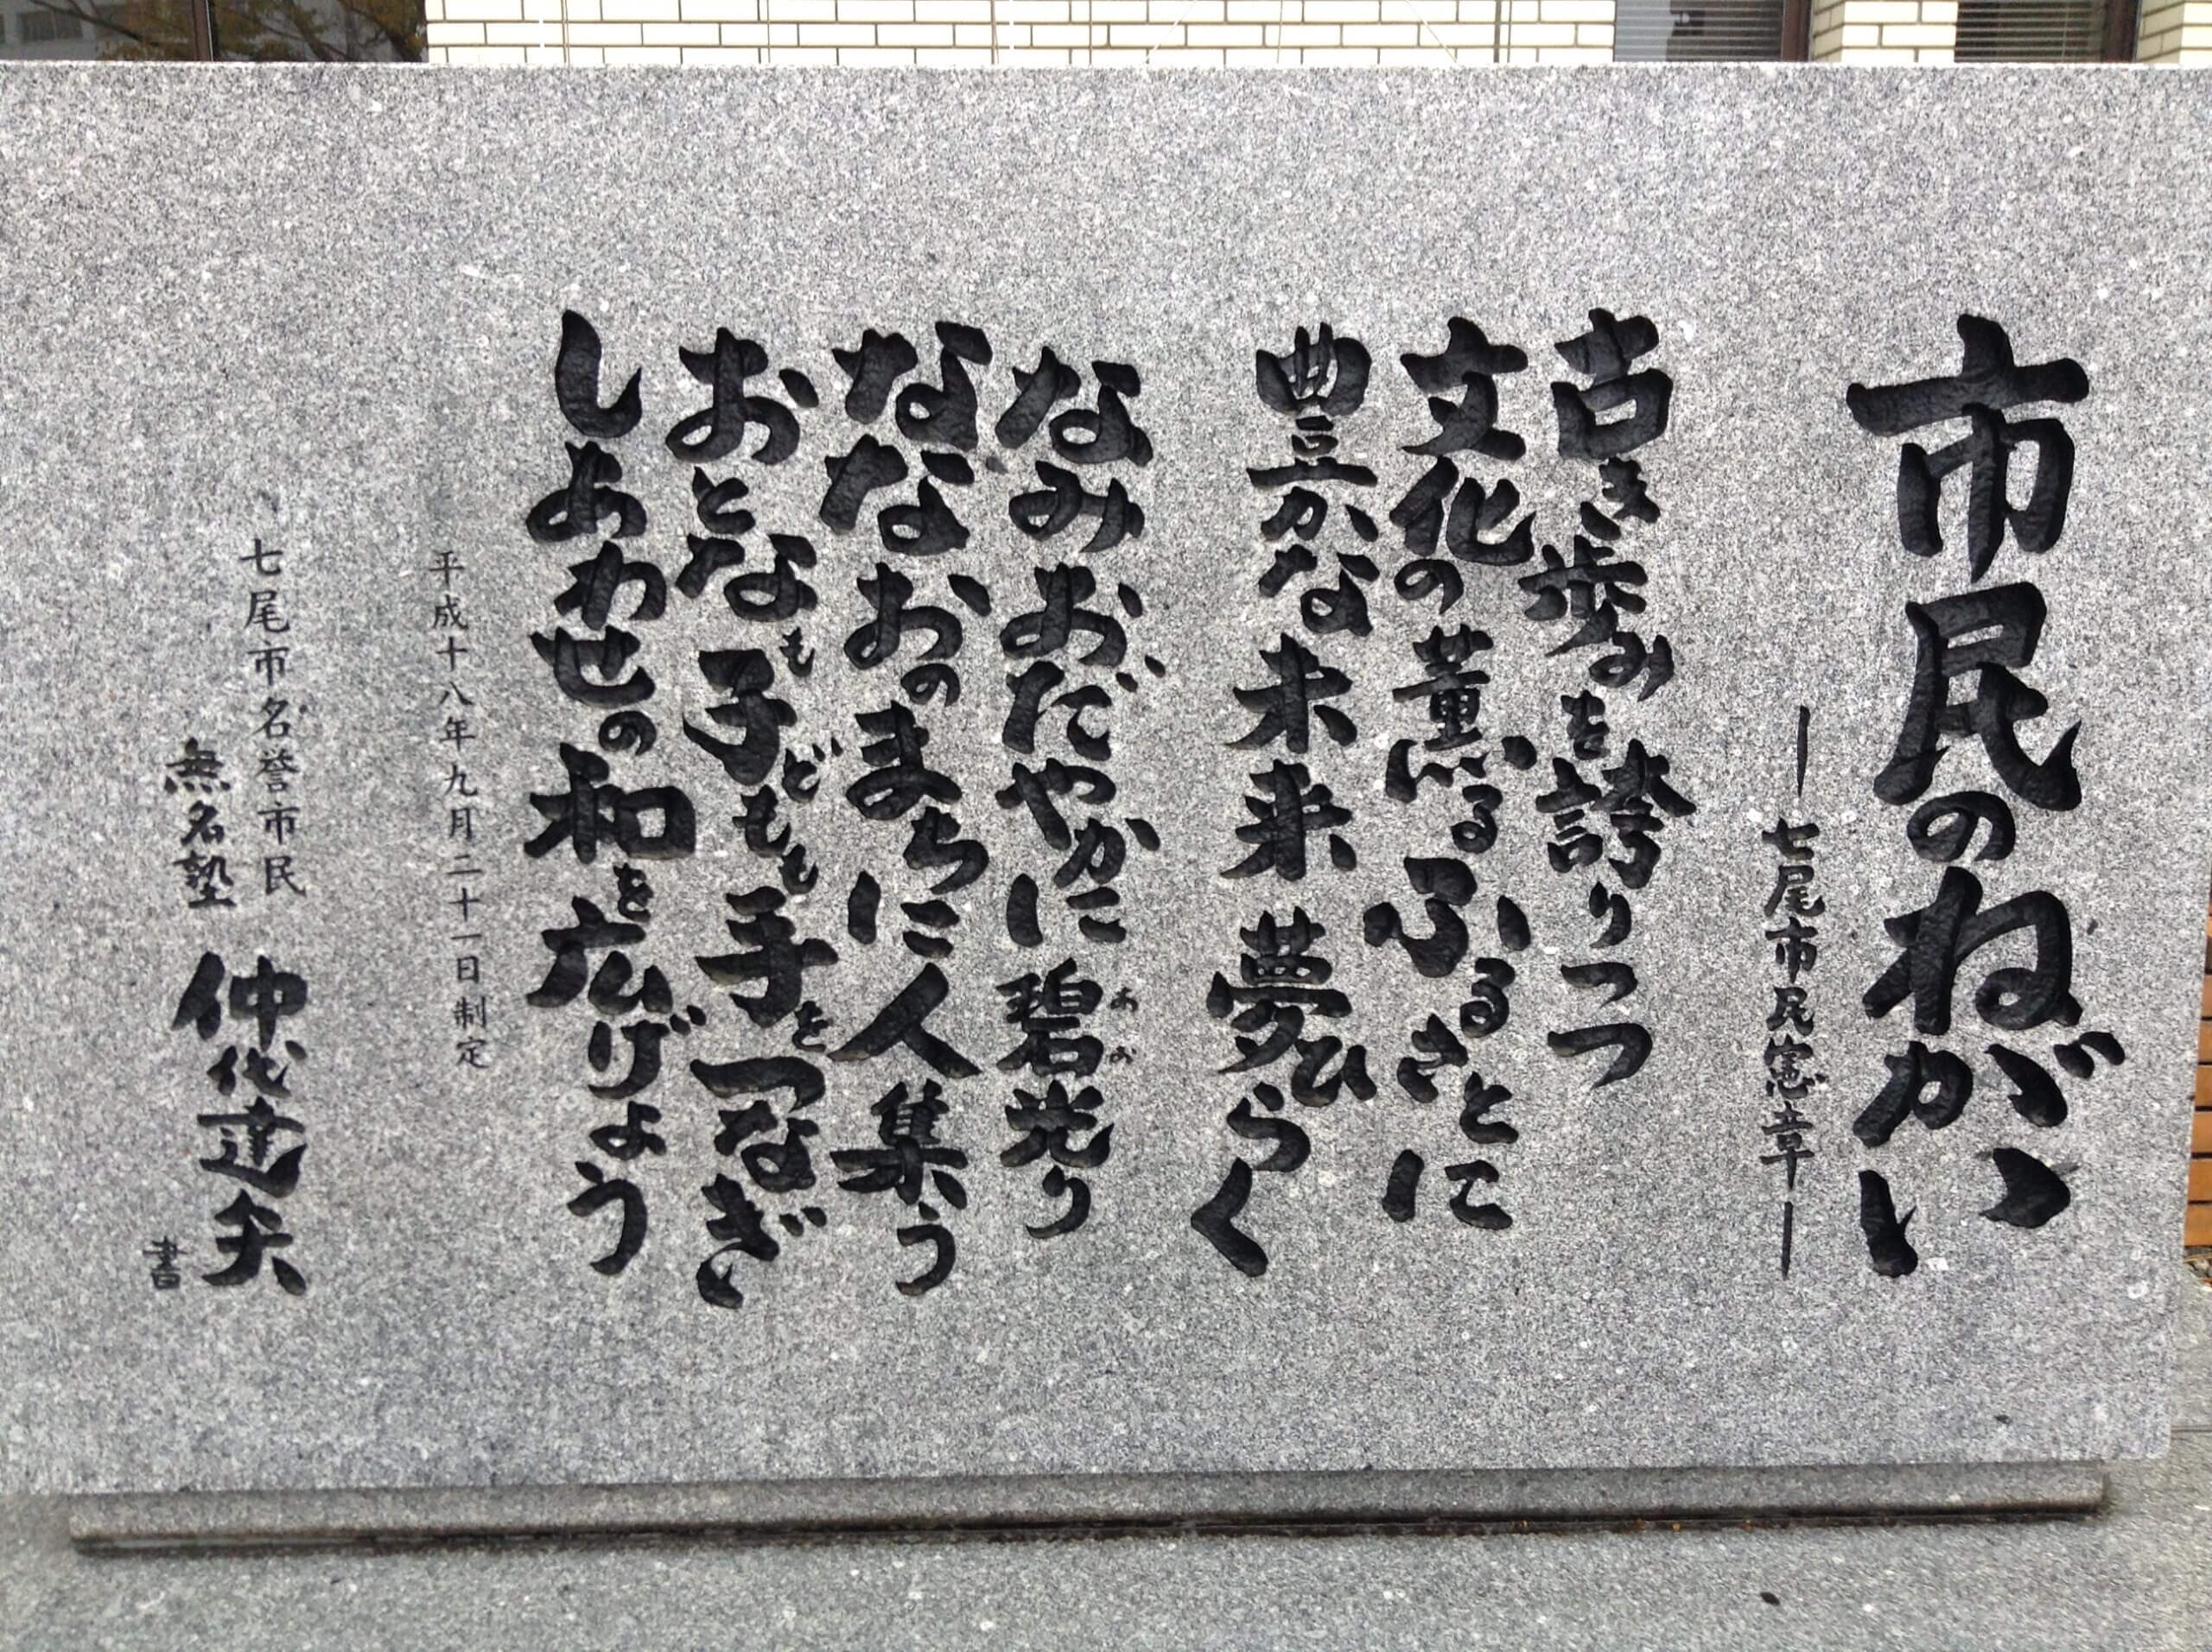 七尾市役所前にある七尾市民憲章石碑の文字は仲代達矢氏の書